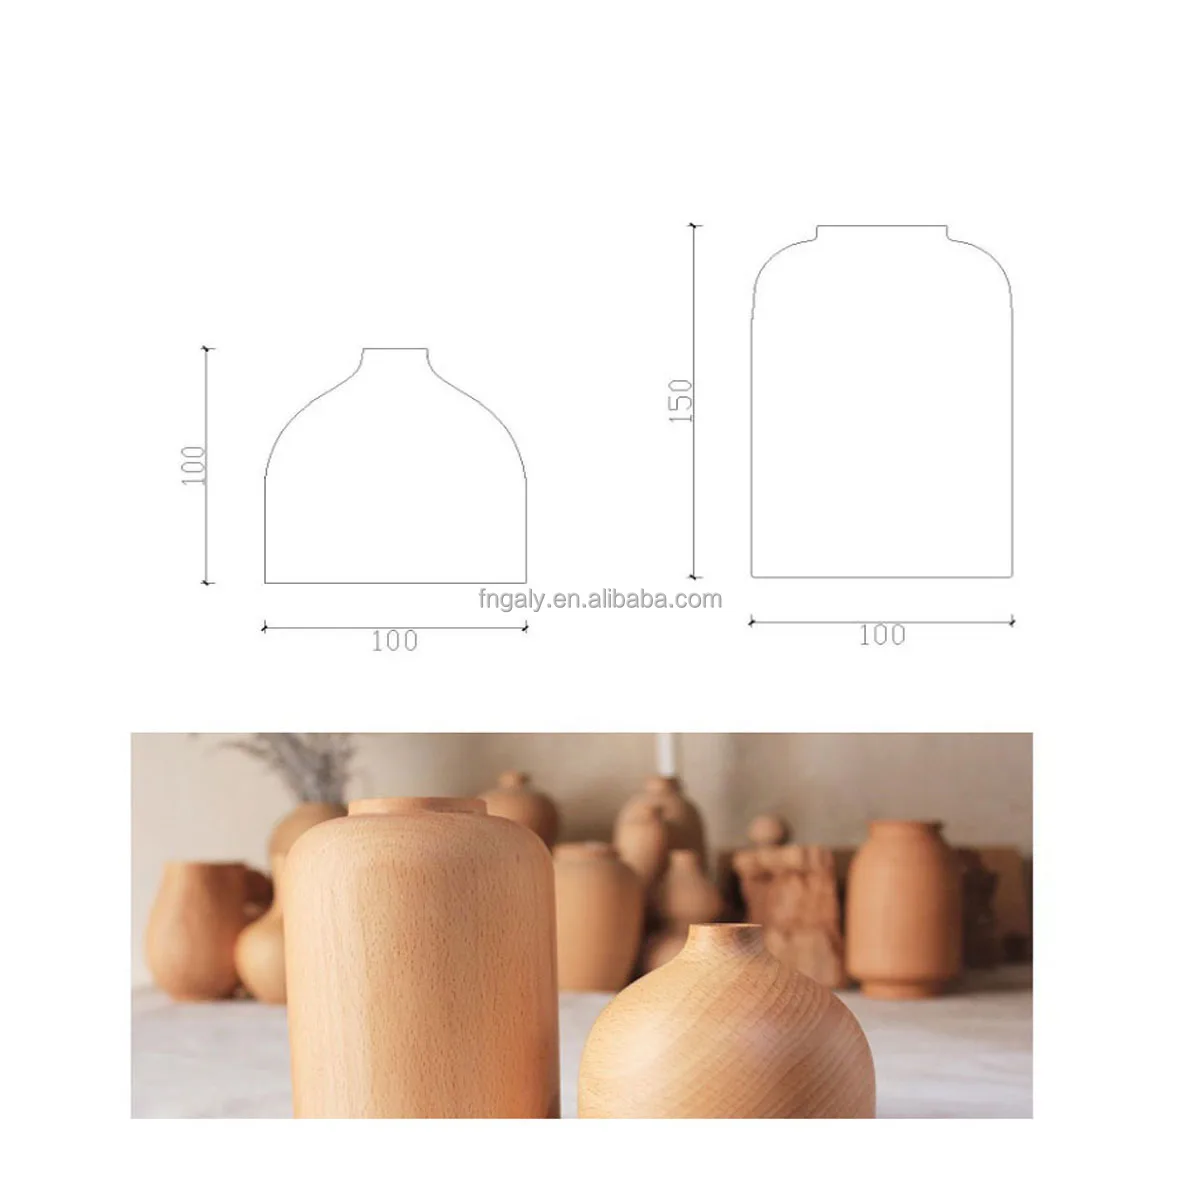 Деревянная ваза для цветов на заказ, креативные большие маленькие деревянные вазы для стола, домашний декор